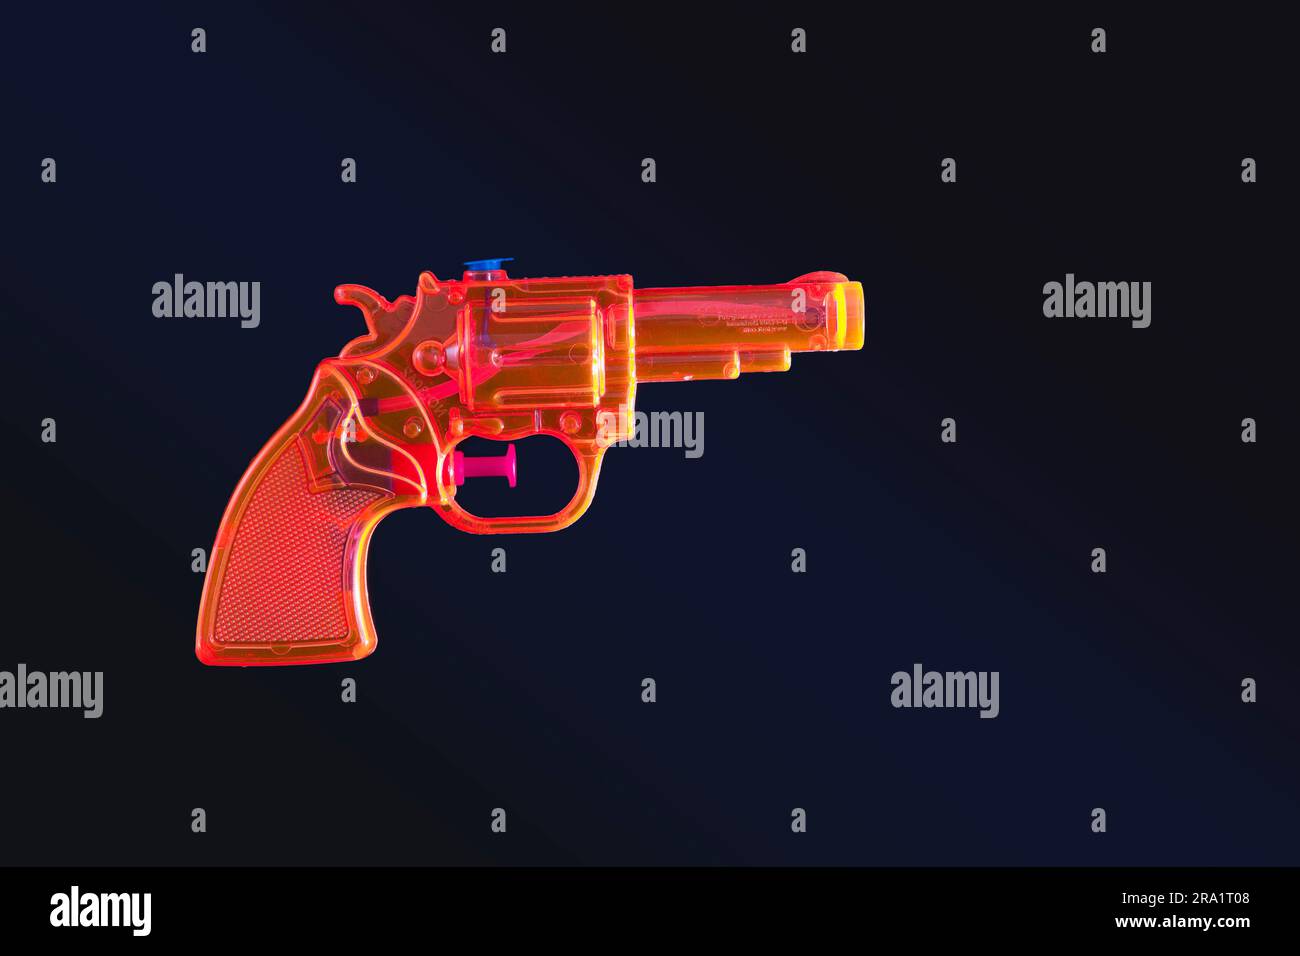 Tagliare una pistola giocattolo arancione contro il nero Foto Stock